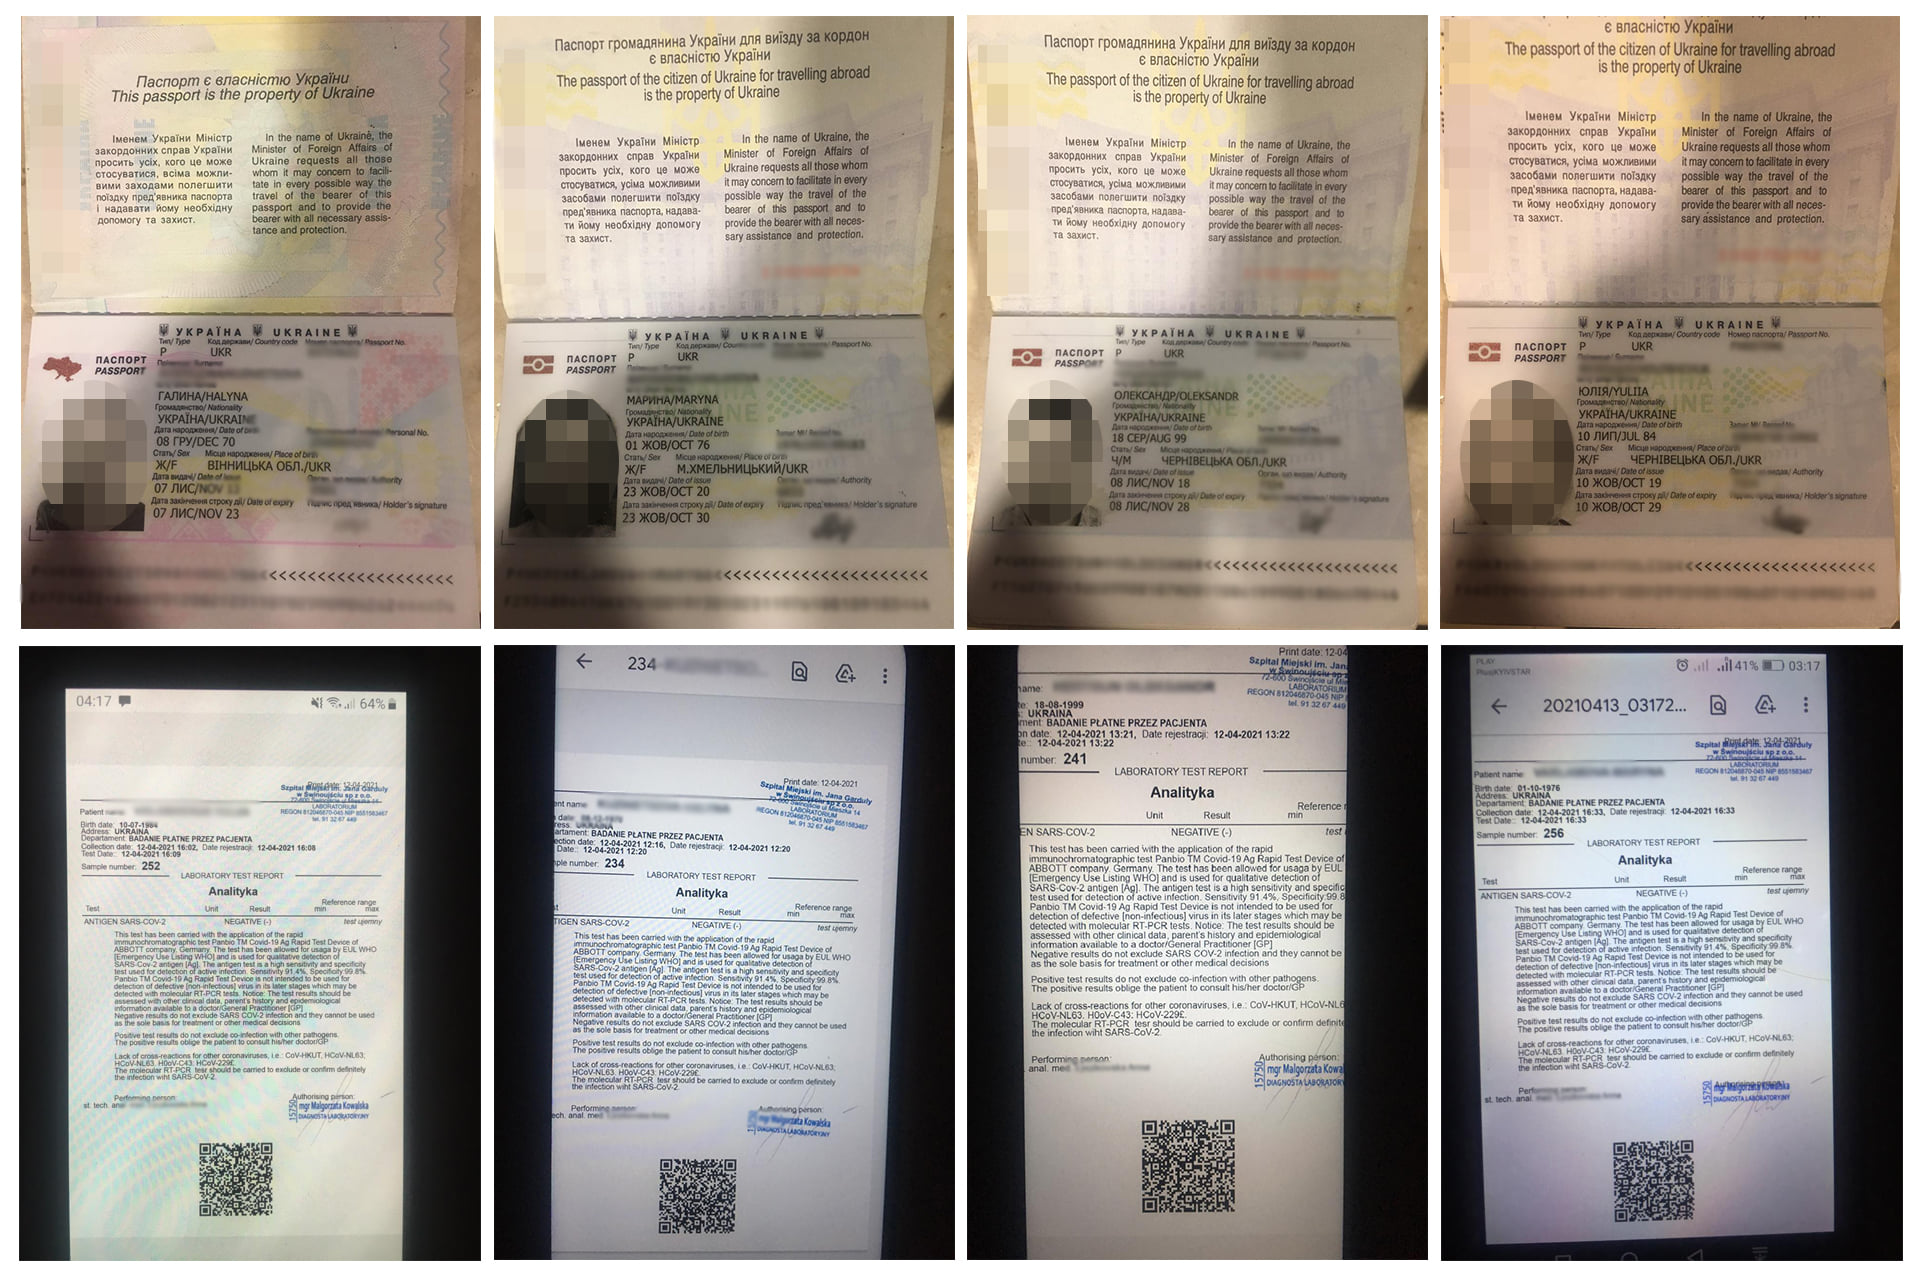 Українці намагались перетнути кордон із фальшивими довідками про проходження тесту ПЛР